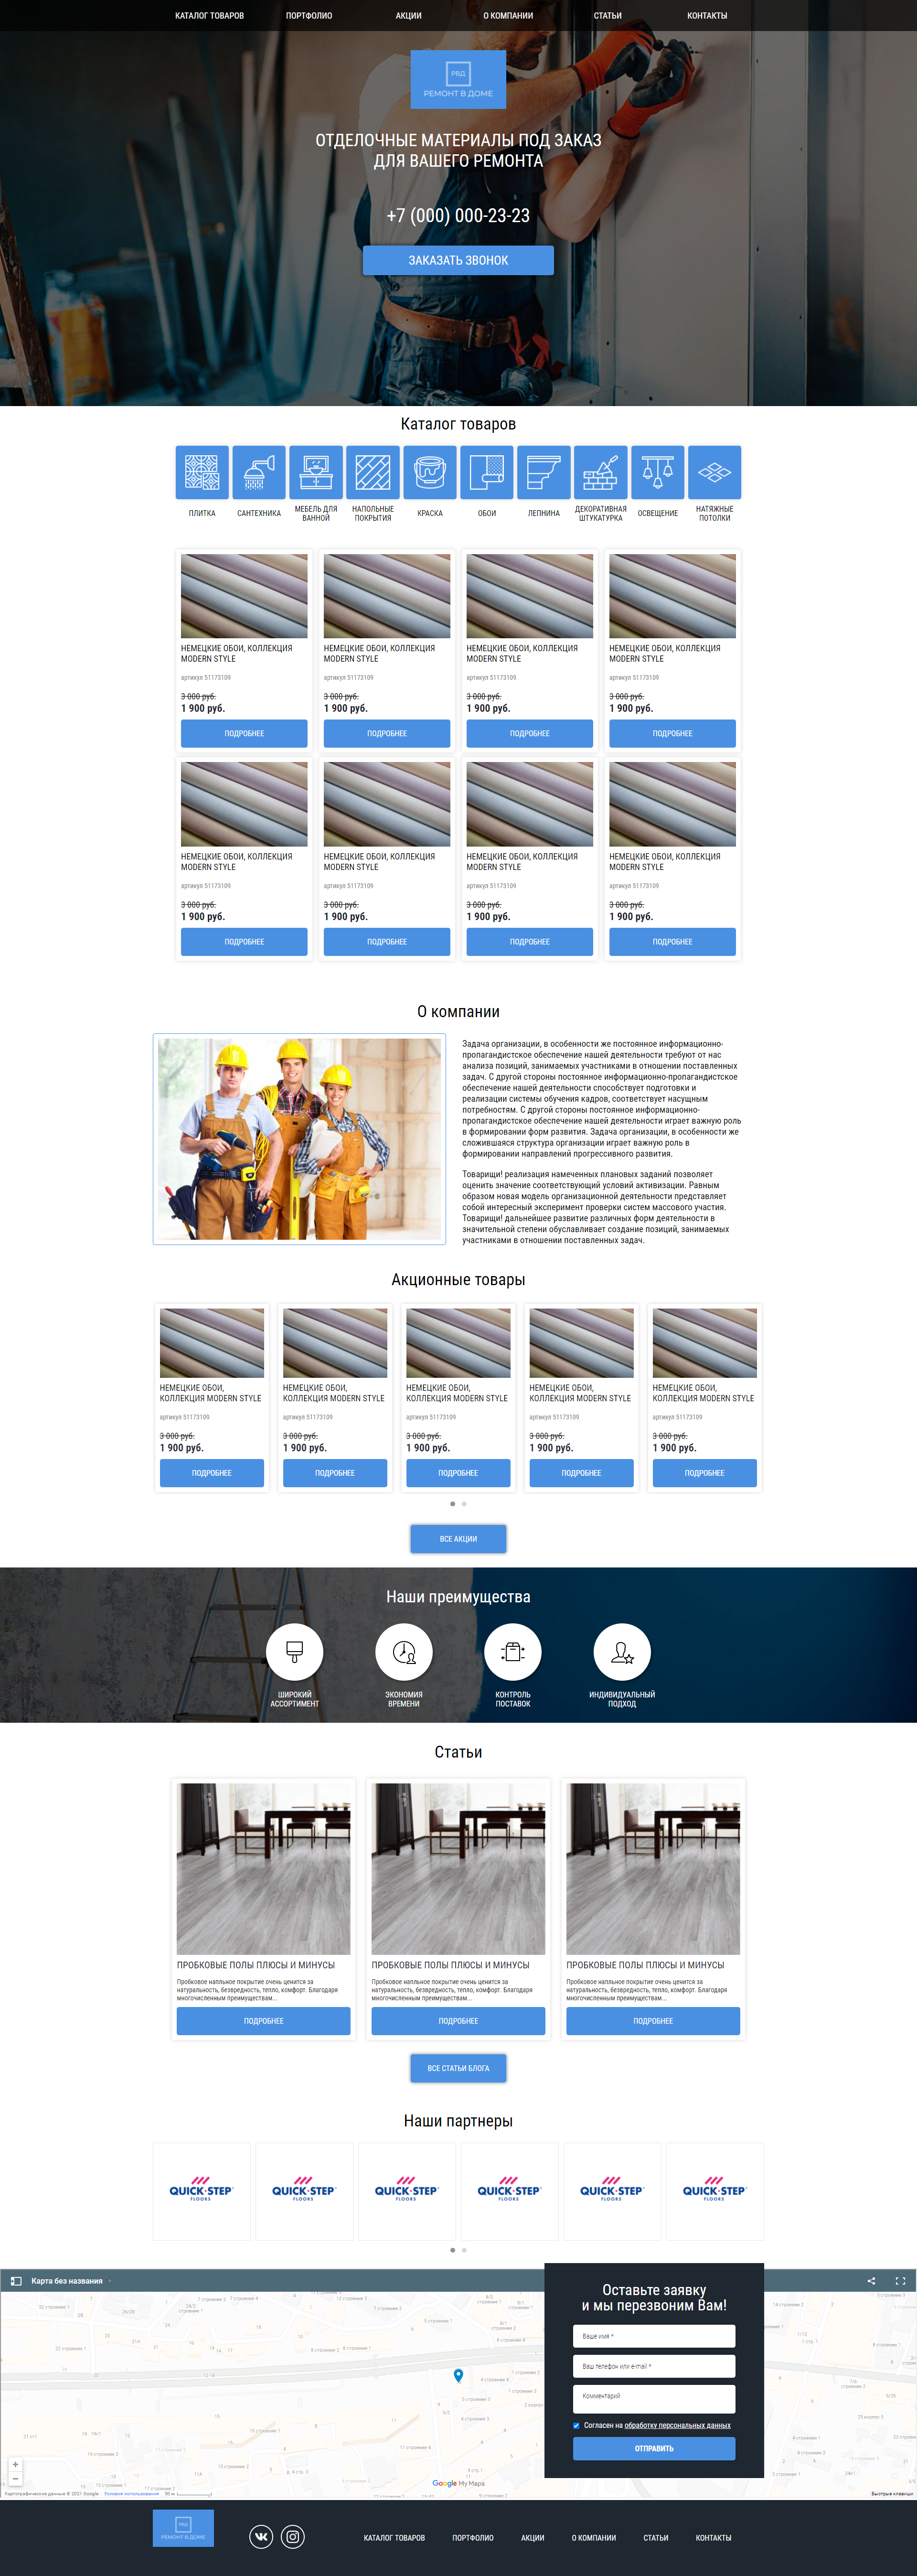 Верстка двух страниц сайта по продаже товаров для ремонта